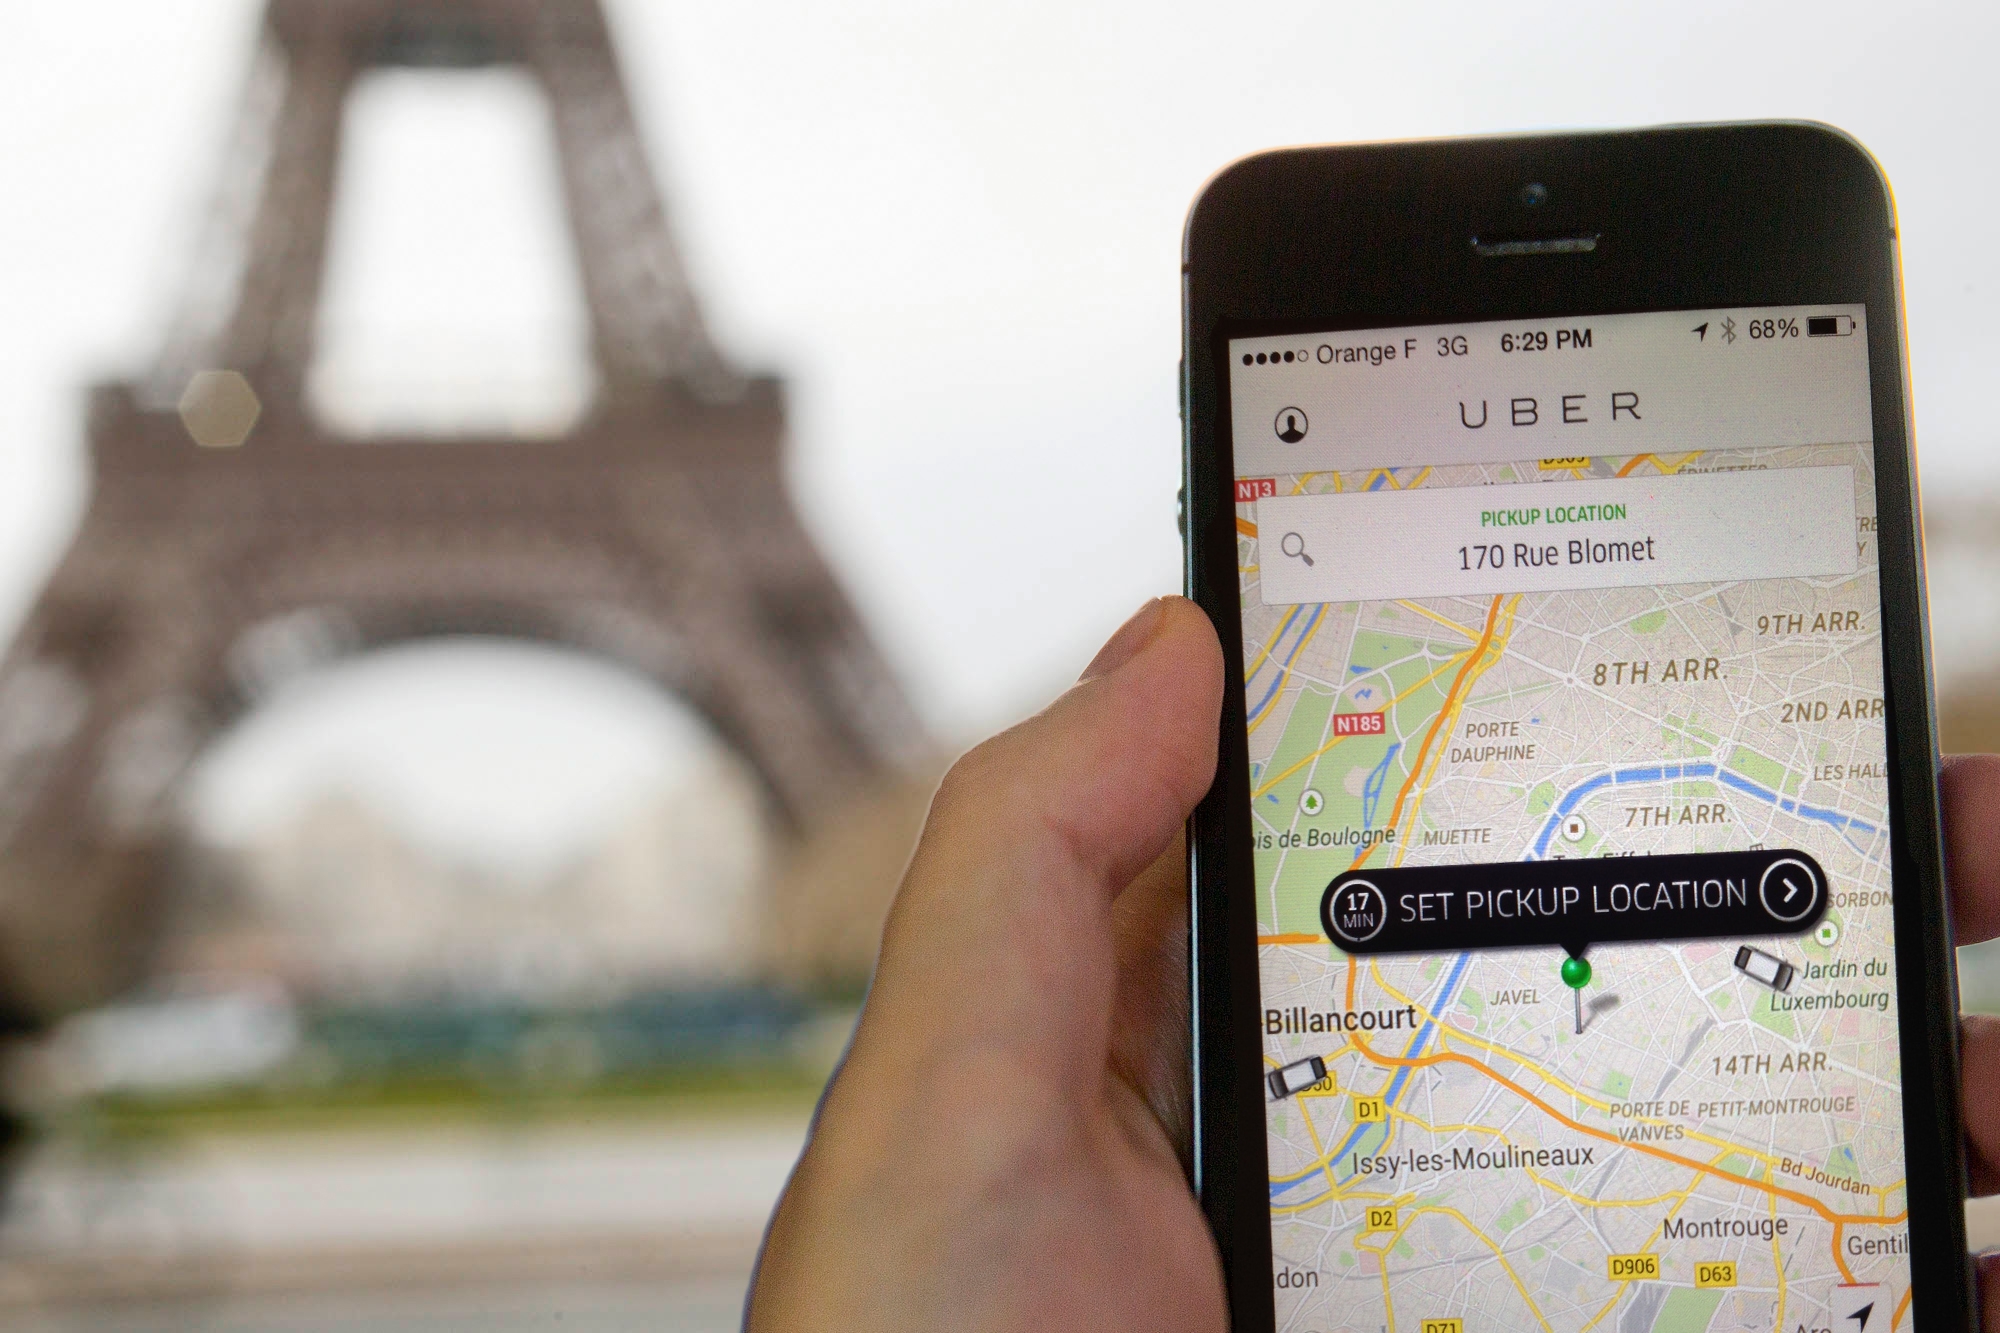 Ευρωπαϊκό Δικαστήριο: Συμβατή προς το ευρωπαϊκό δίκαιο η δίωξη κατά της Uber στη Γαλλία